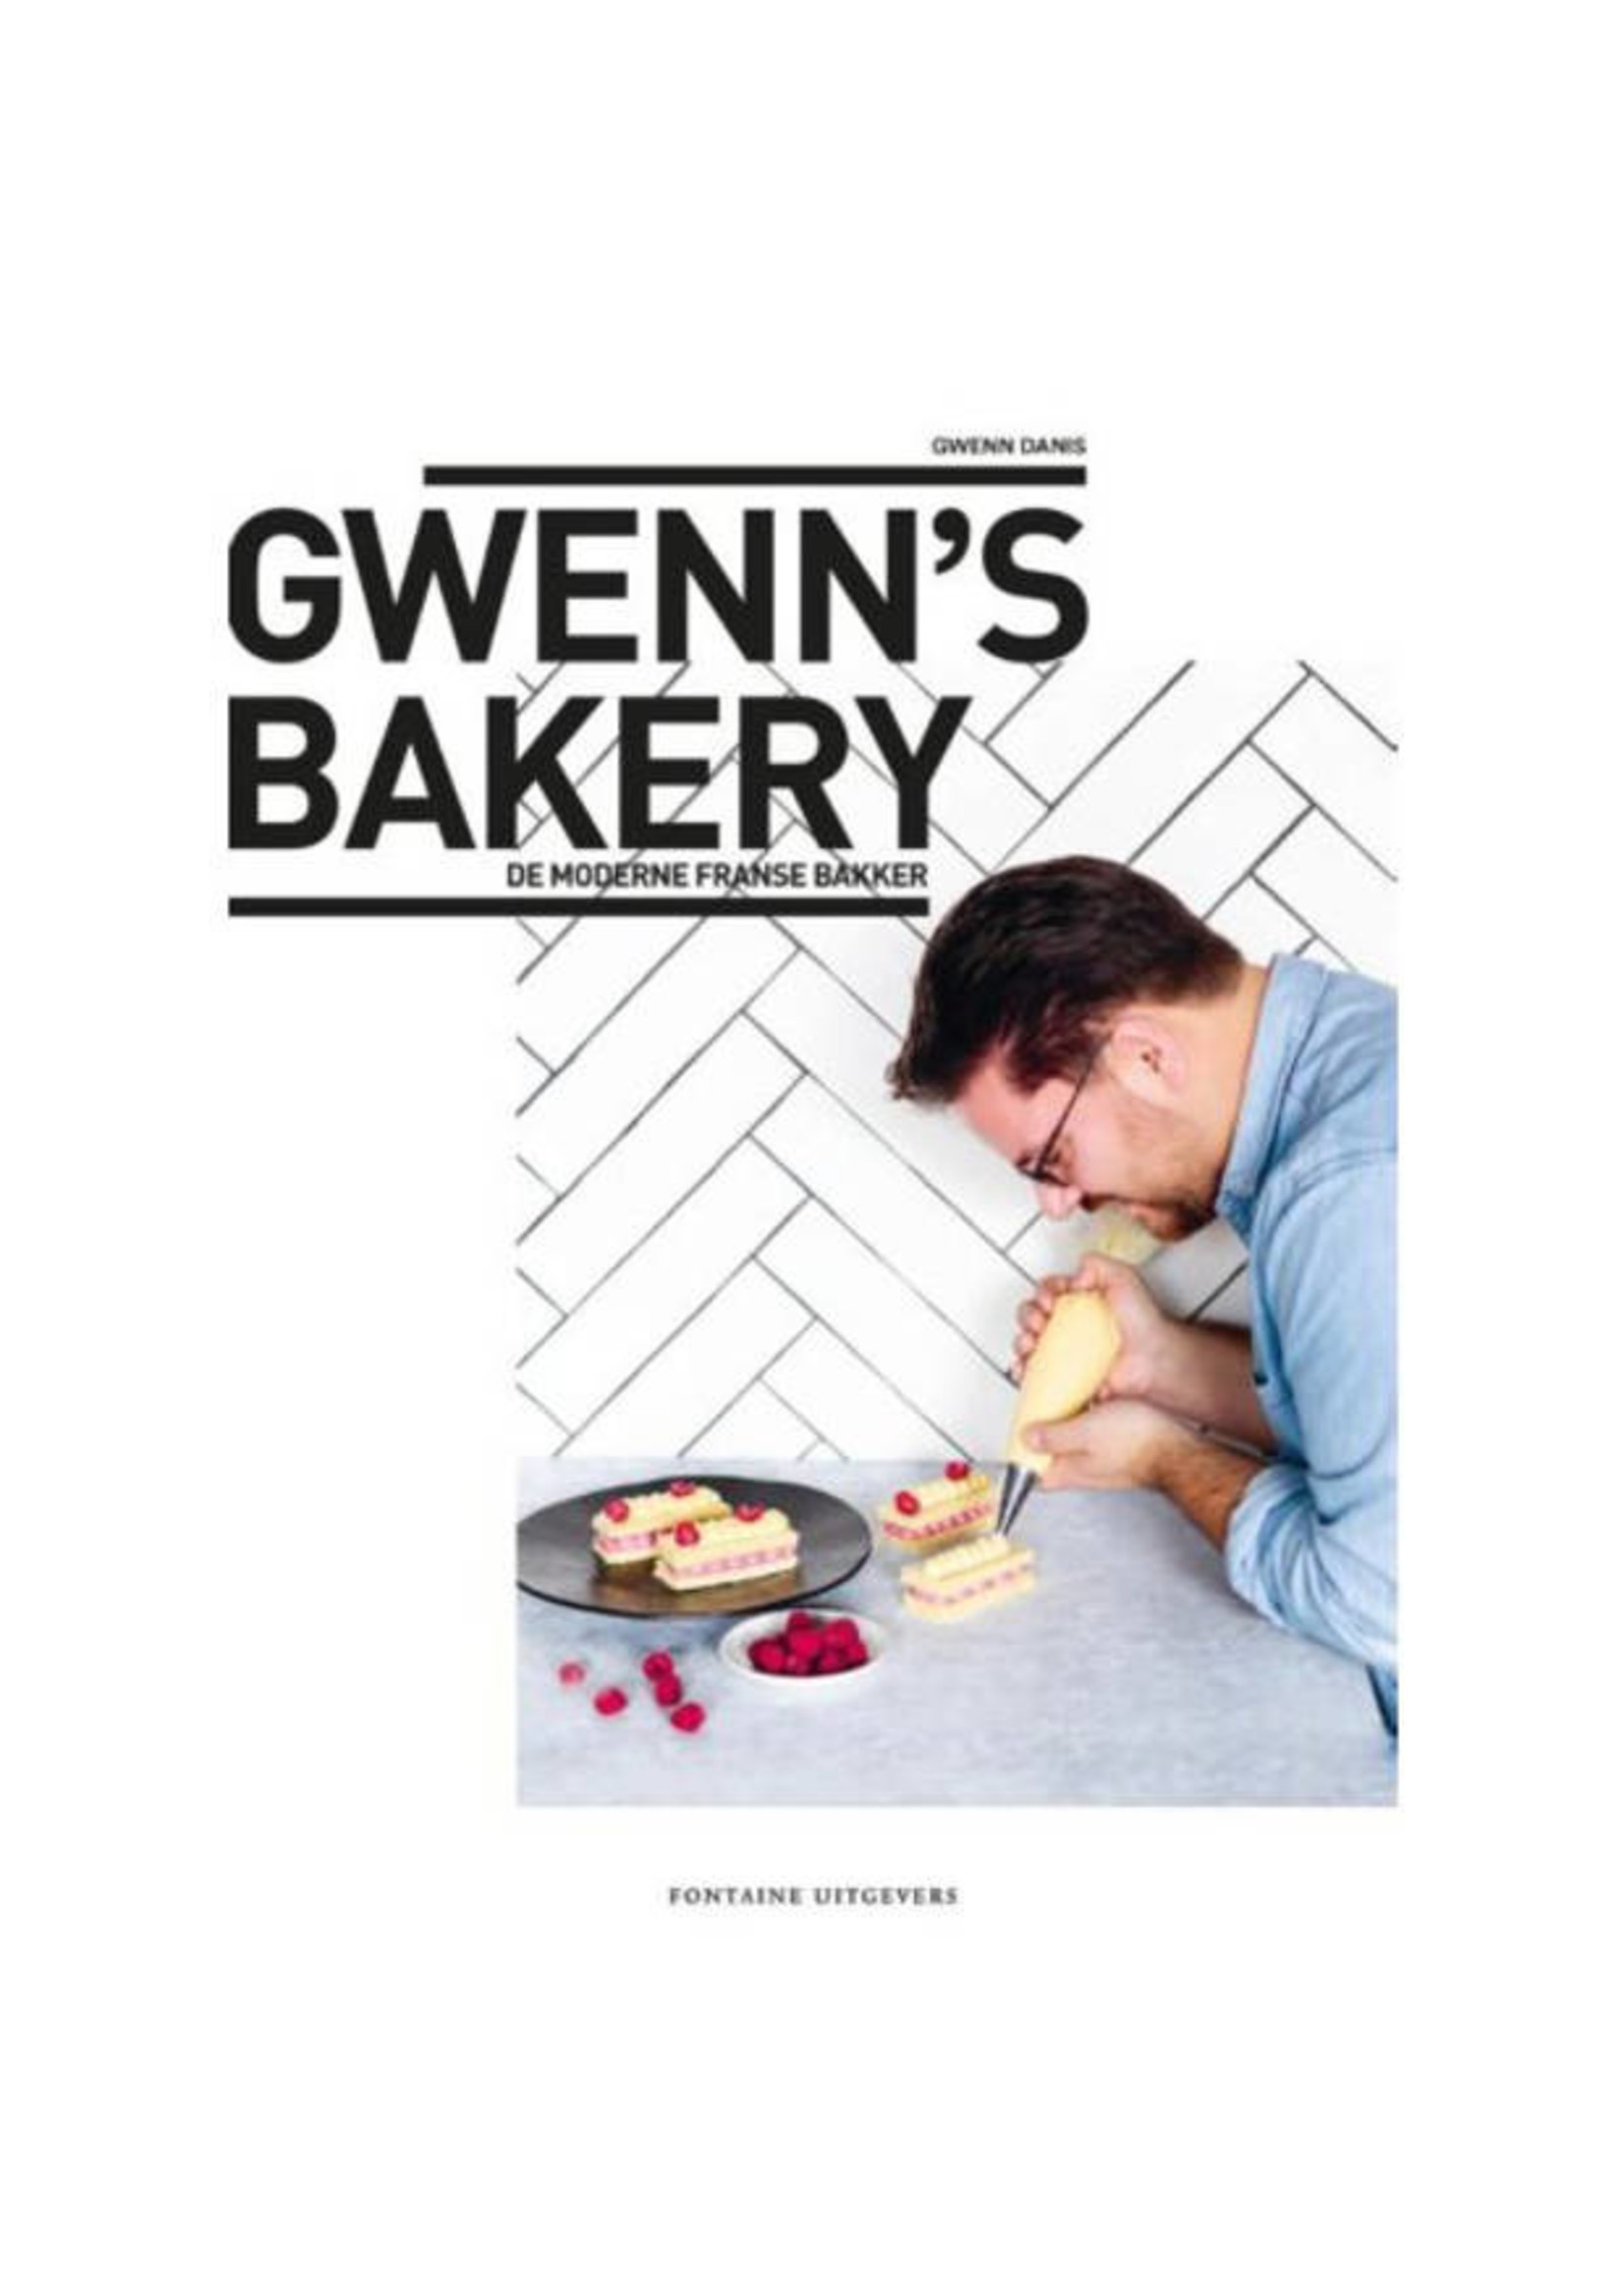 Gwen's bakery